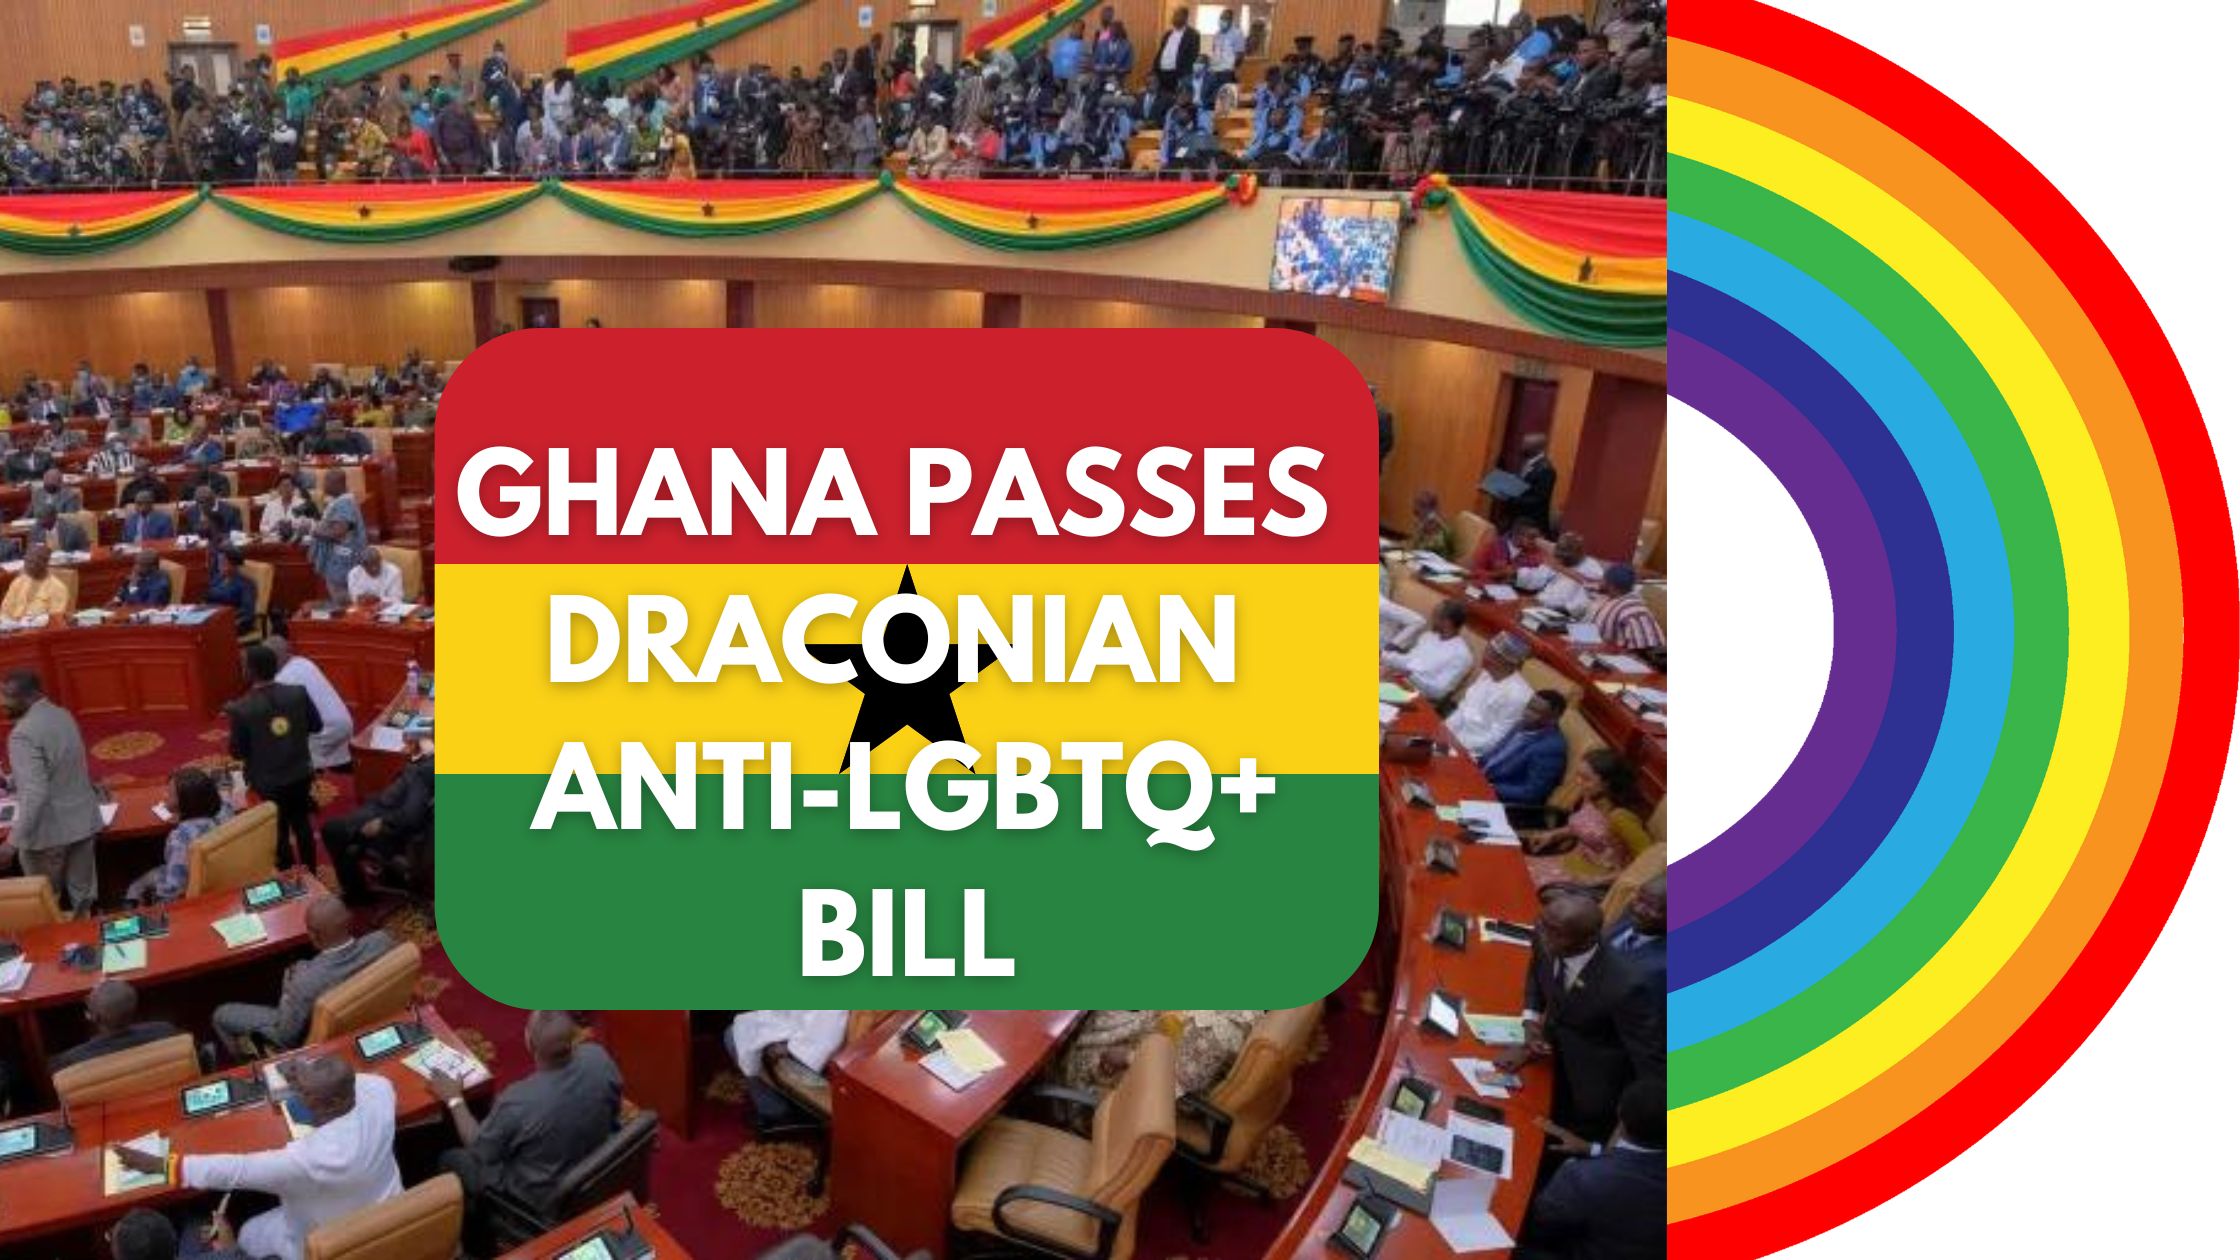 GHANA PASSES ANTI LGBTQ+ DRACONIAN BILL!